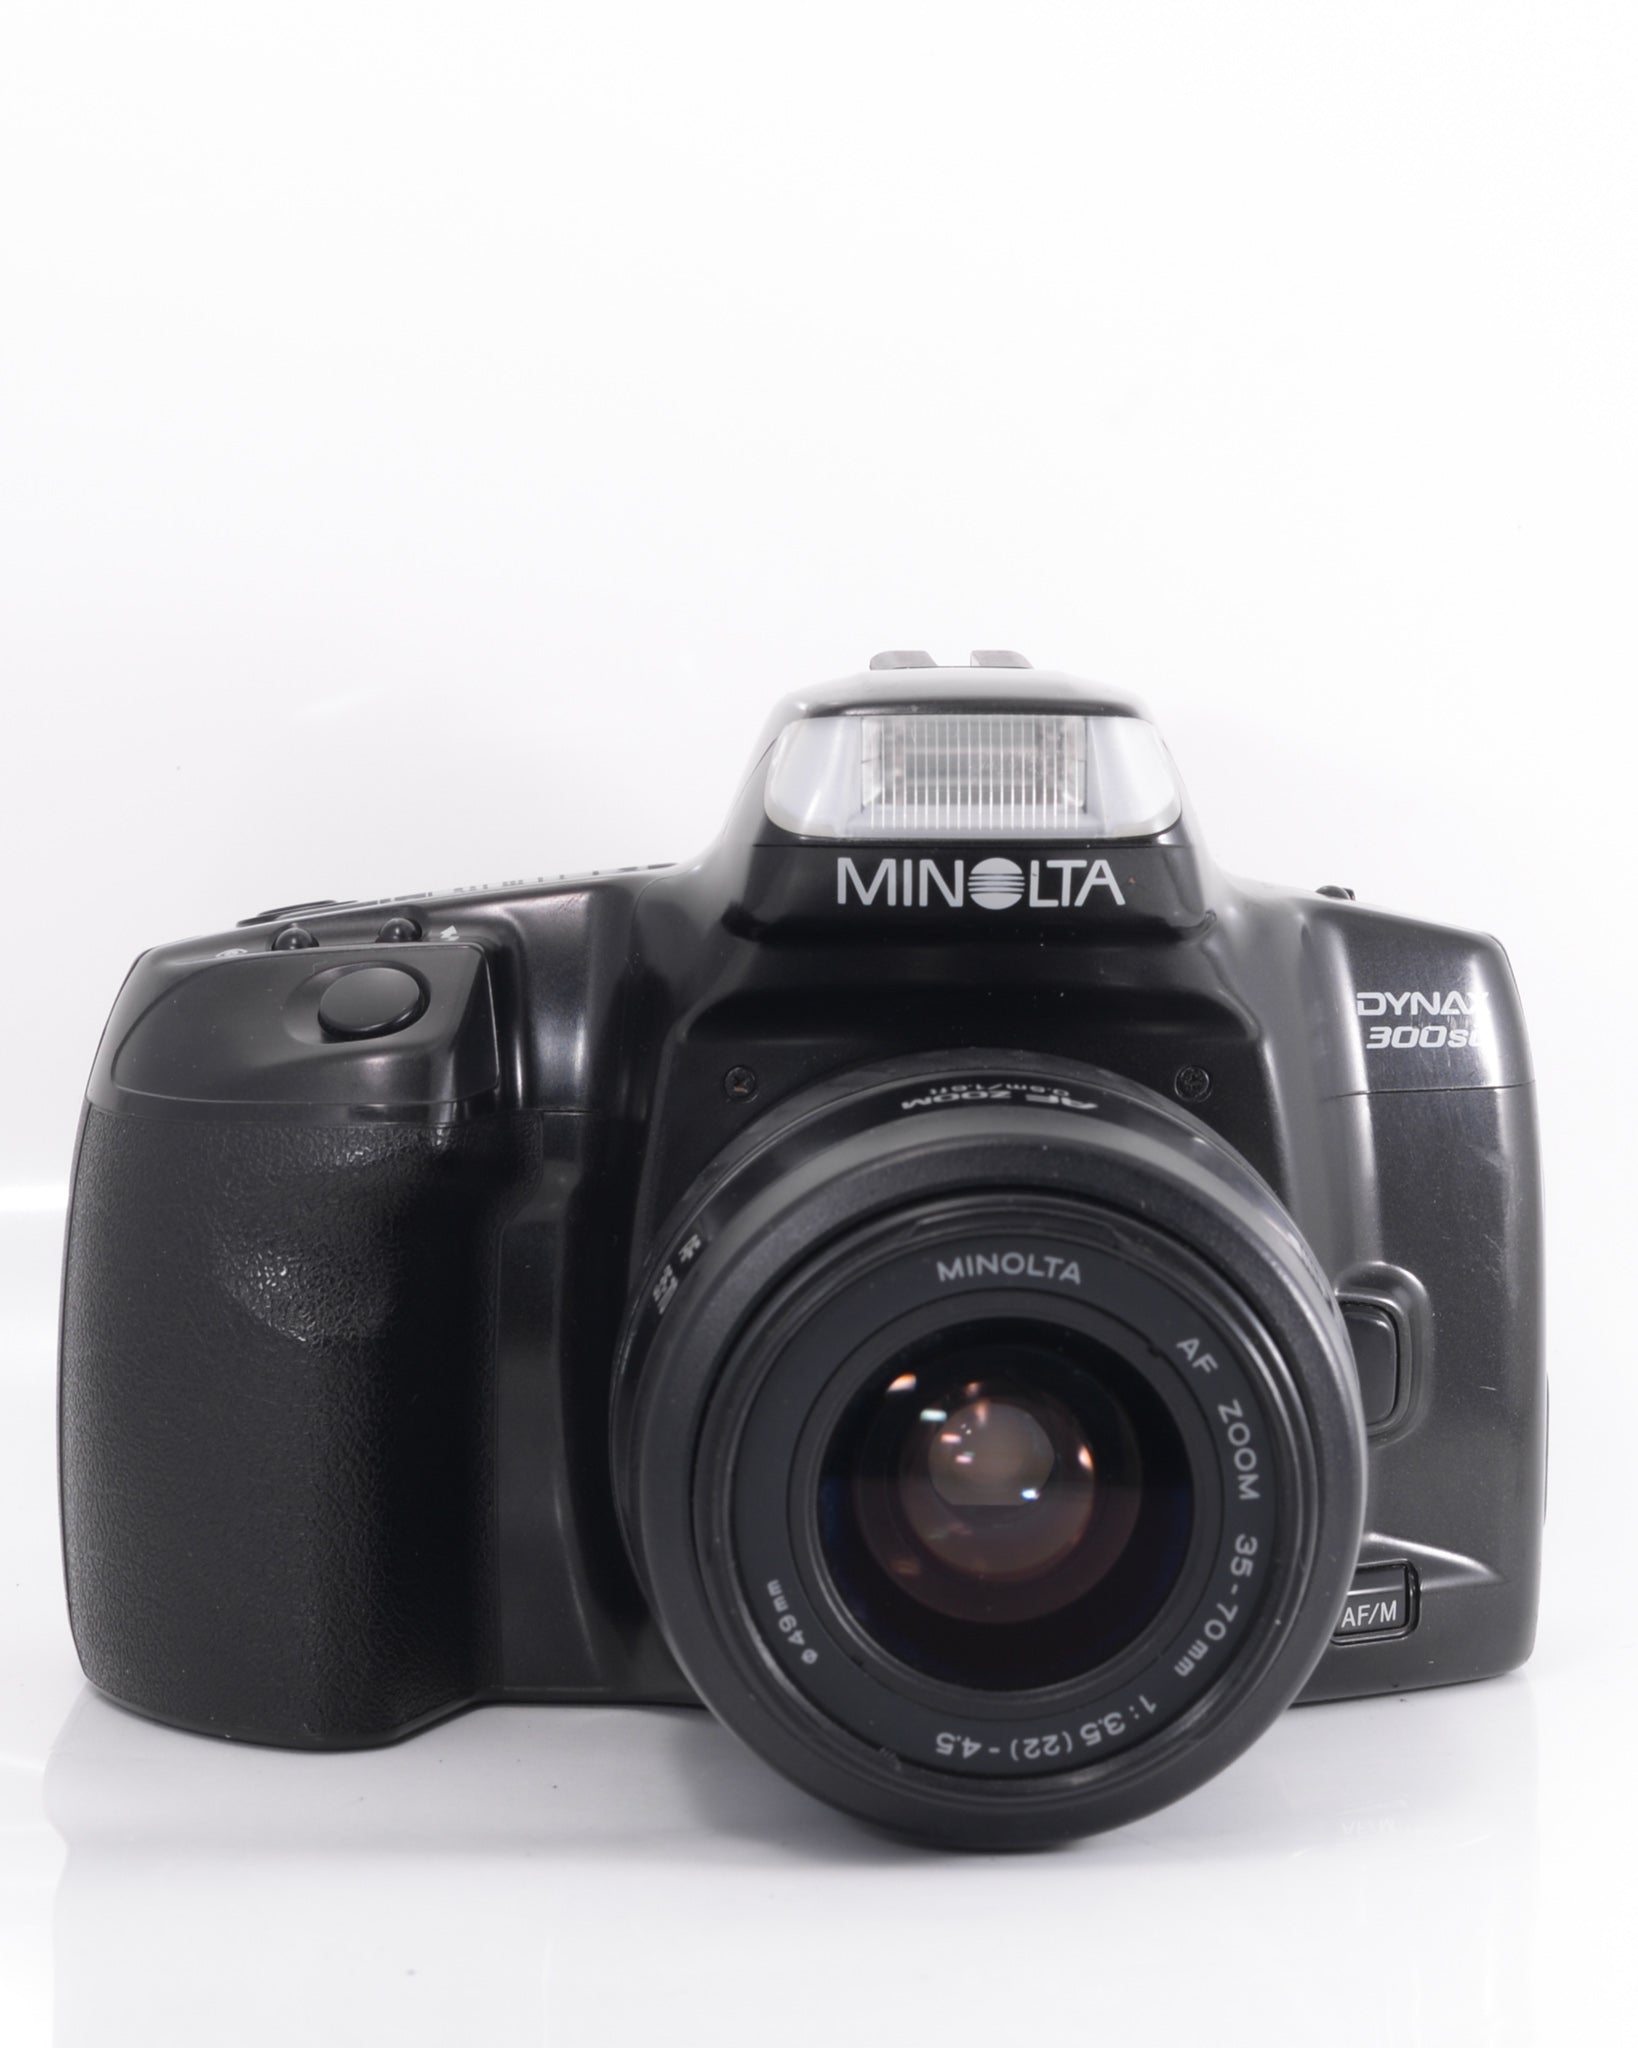 Minolta Dynax 300si 35mm SLR film camera with 35-70mm f4 lens